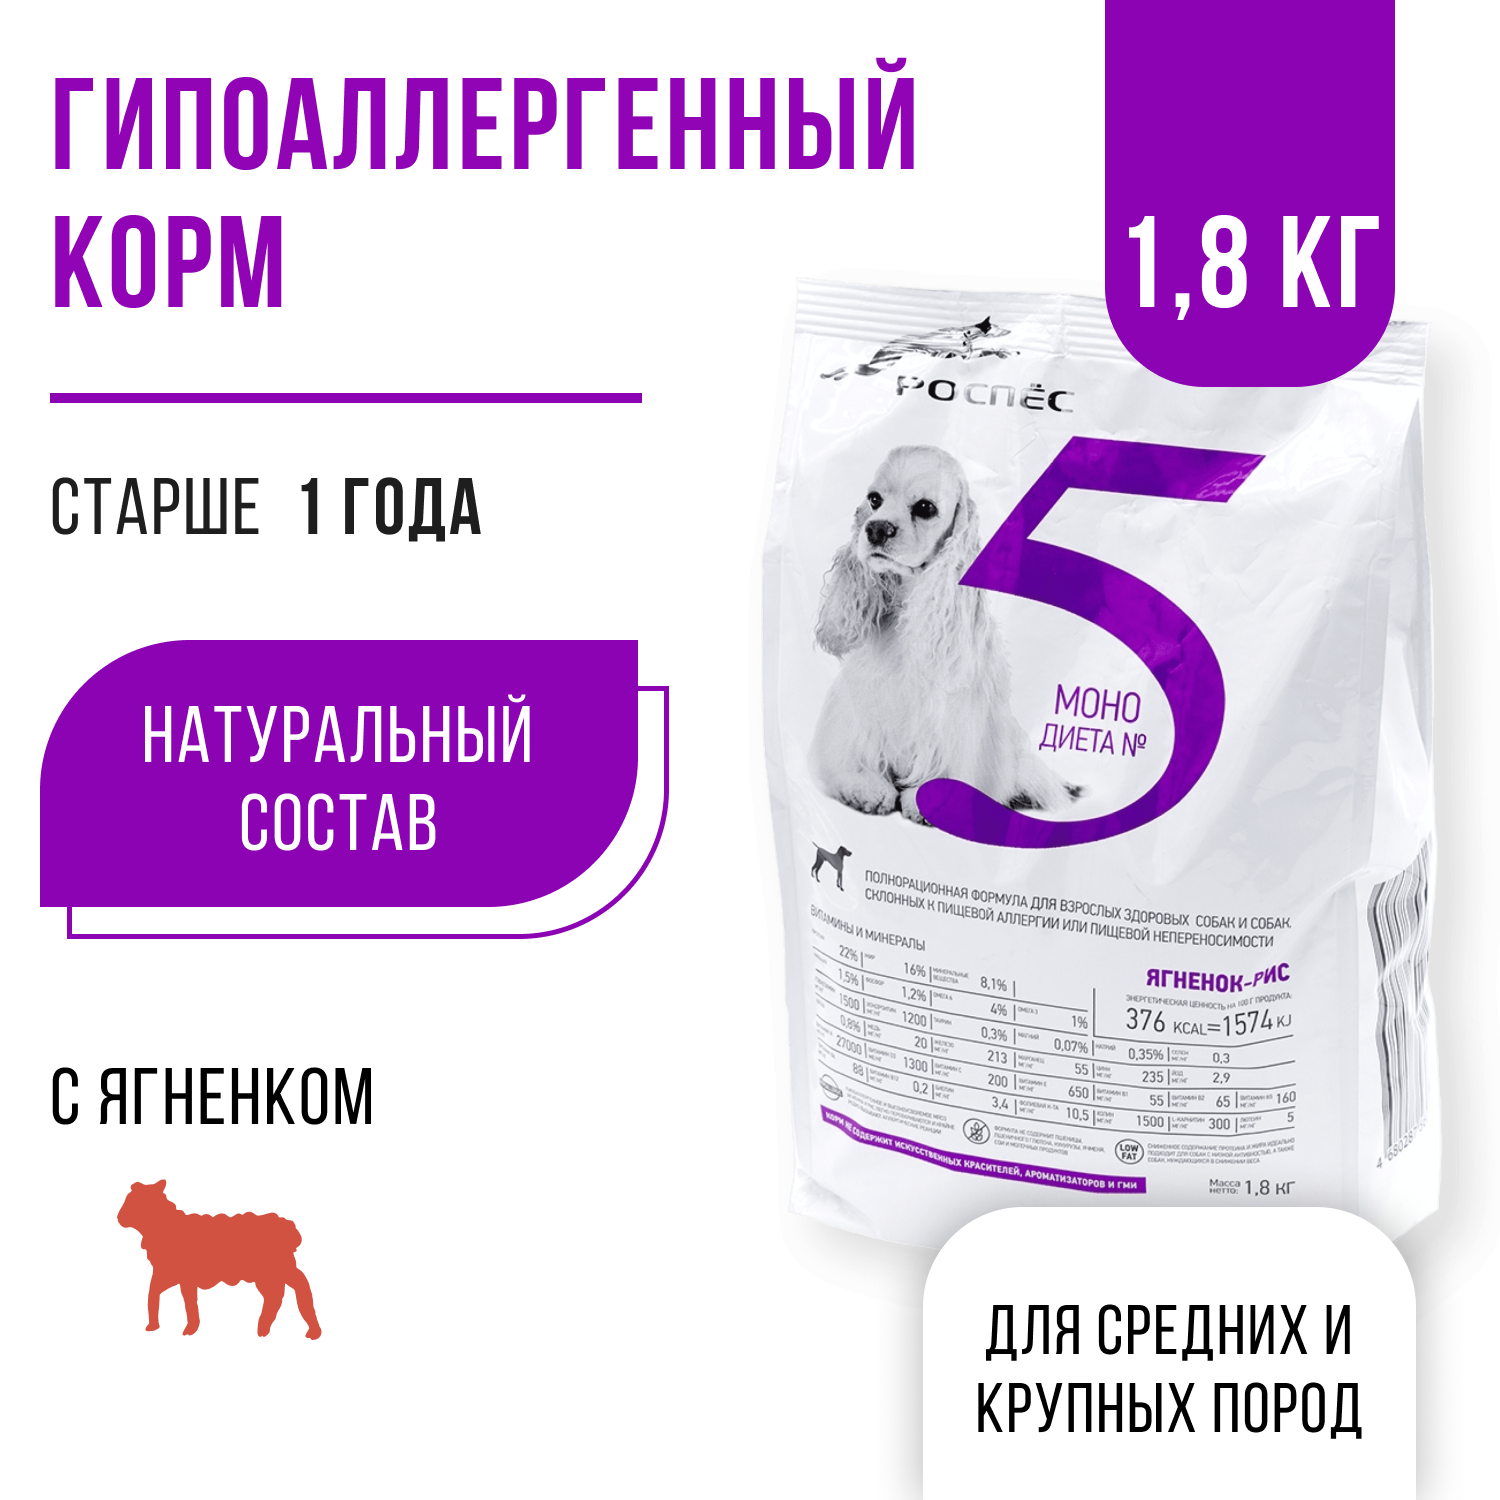 Сухой корм для собак супер-премиум-класса РосПёс, Моно-диета №5, гипоаллергенный, ягненок с рисом, 1,8 кг